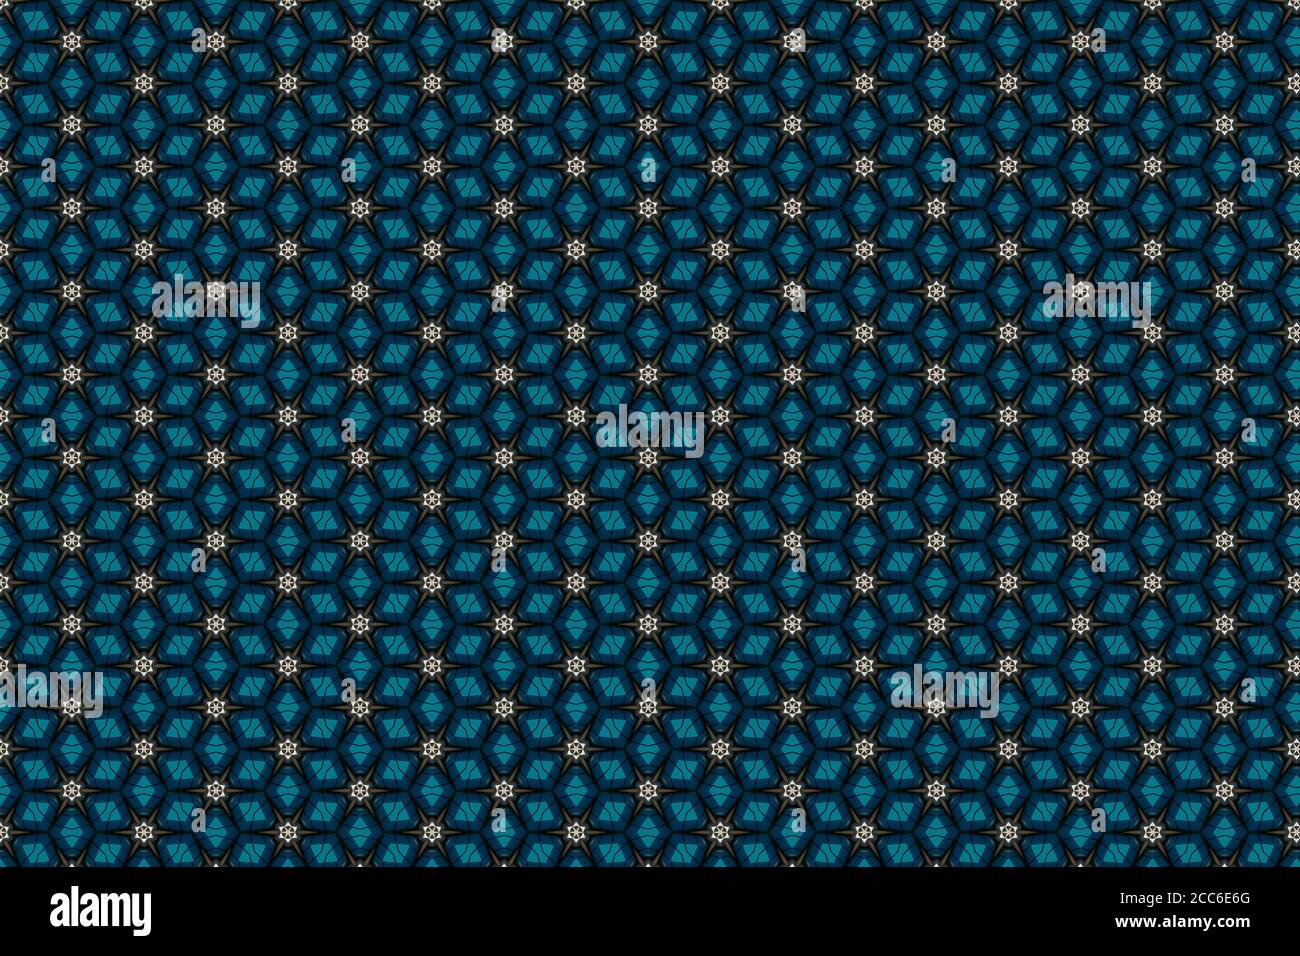 Répétition de formes géométriques. Toile de fond mosaïque bleue et blanche. Arrière-plan géométrique Banque D'Images